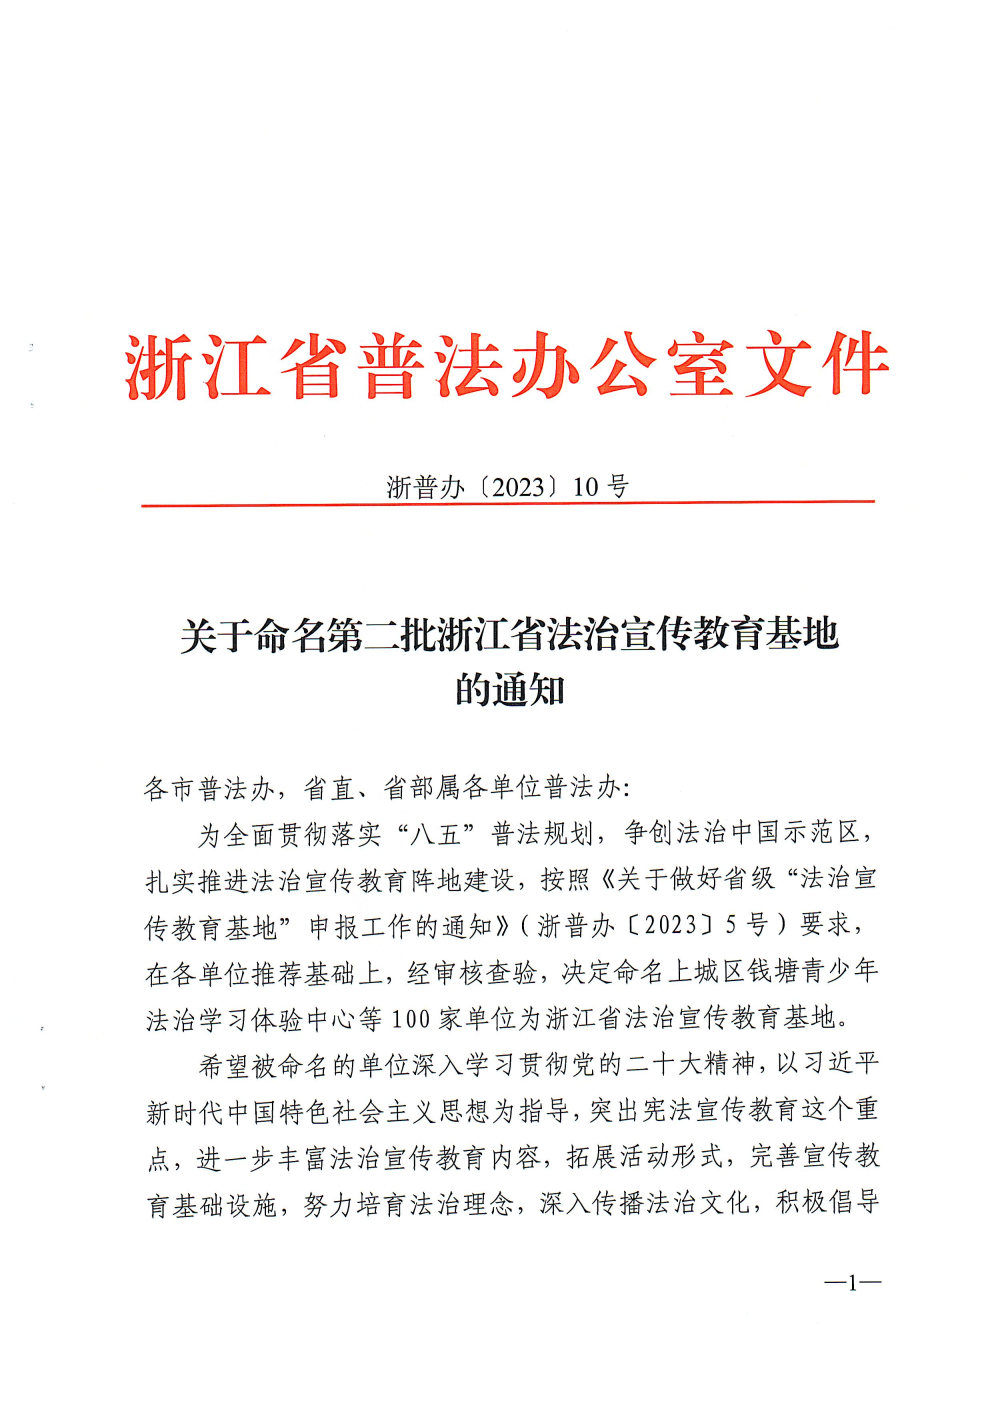 关于命名第二批浙江省法治宣传教育基地的通知_Page1_Image1.jpg